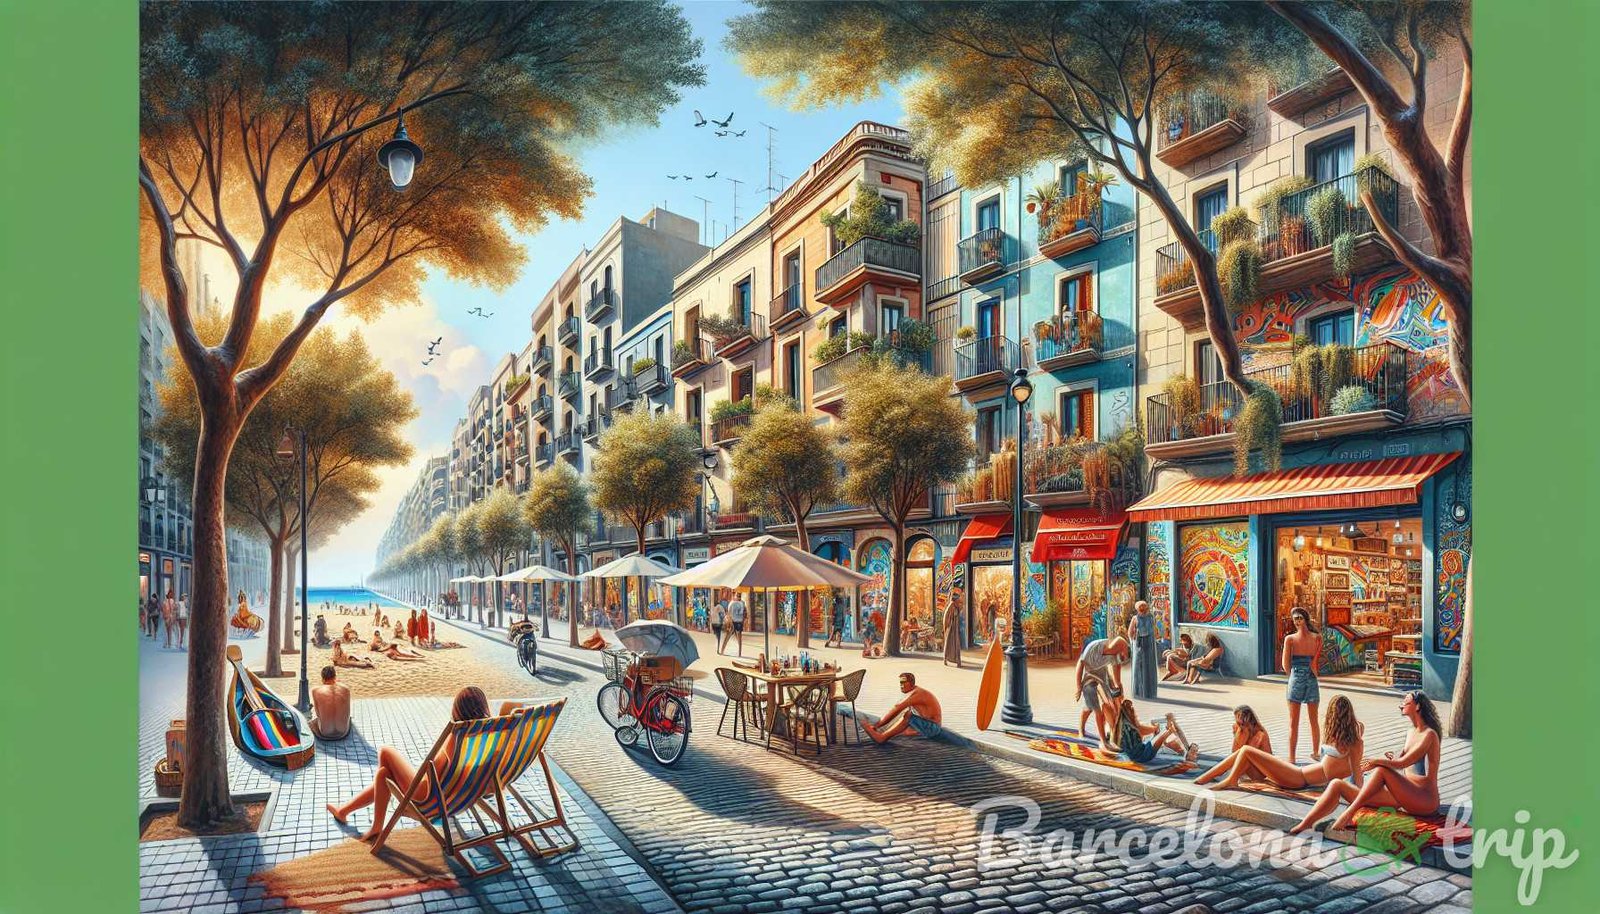 Illustrazione per la sezione: Passeggia lungo le strade alberate di El Poblenou e scoprirai la colorata arte di strada, gli accoglienti caffè - i segreti di barcellona